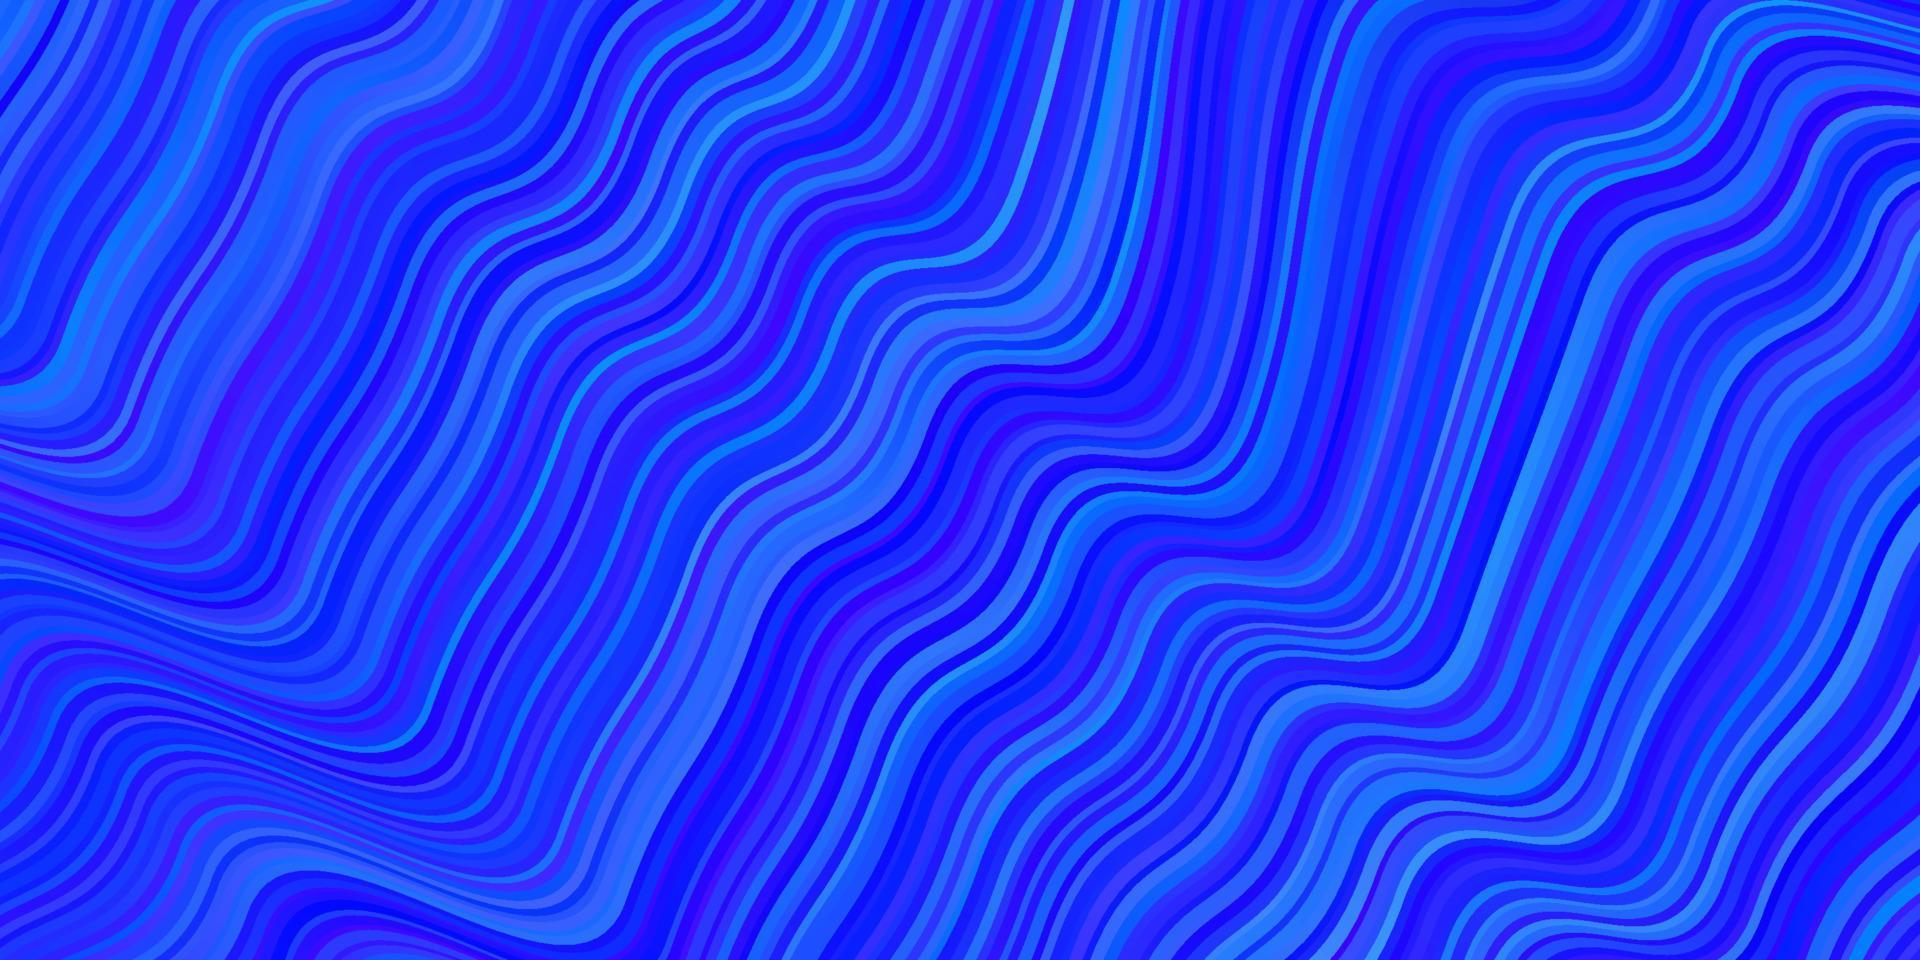 modello vettoriale azzurro con linee piegate.